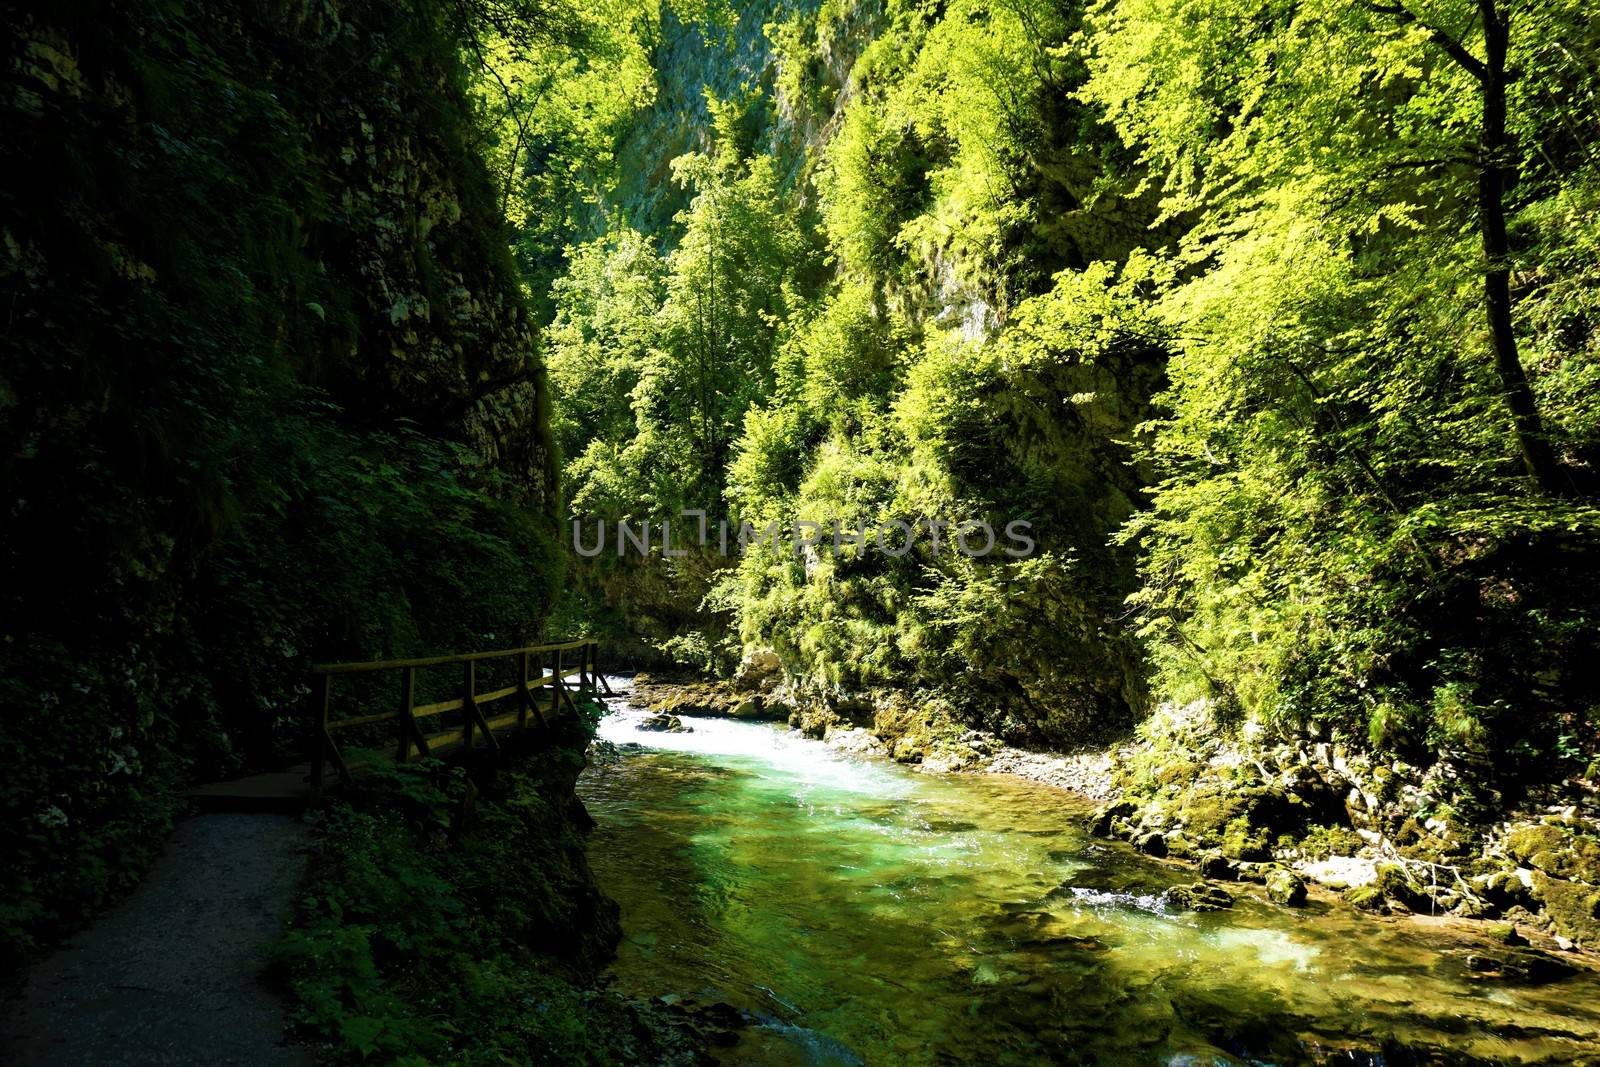 Vintgar Gorge radovna river and trees in Podhom, Slovenia